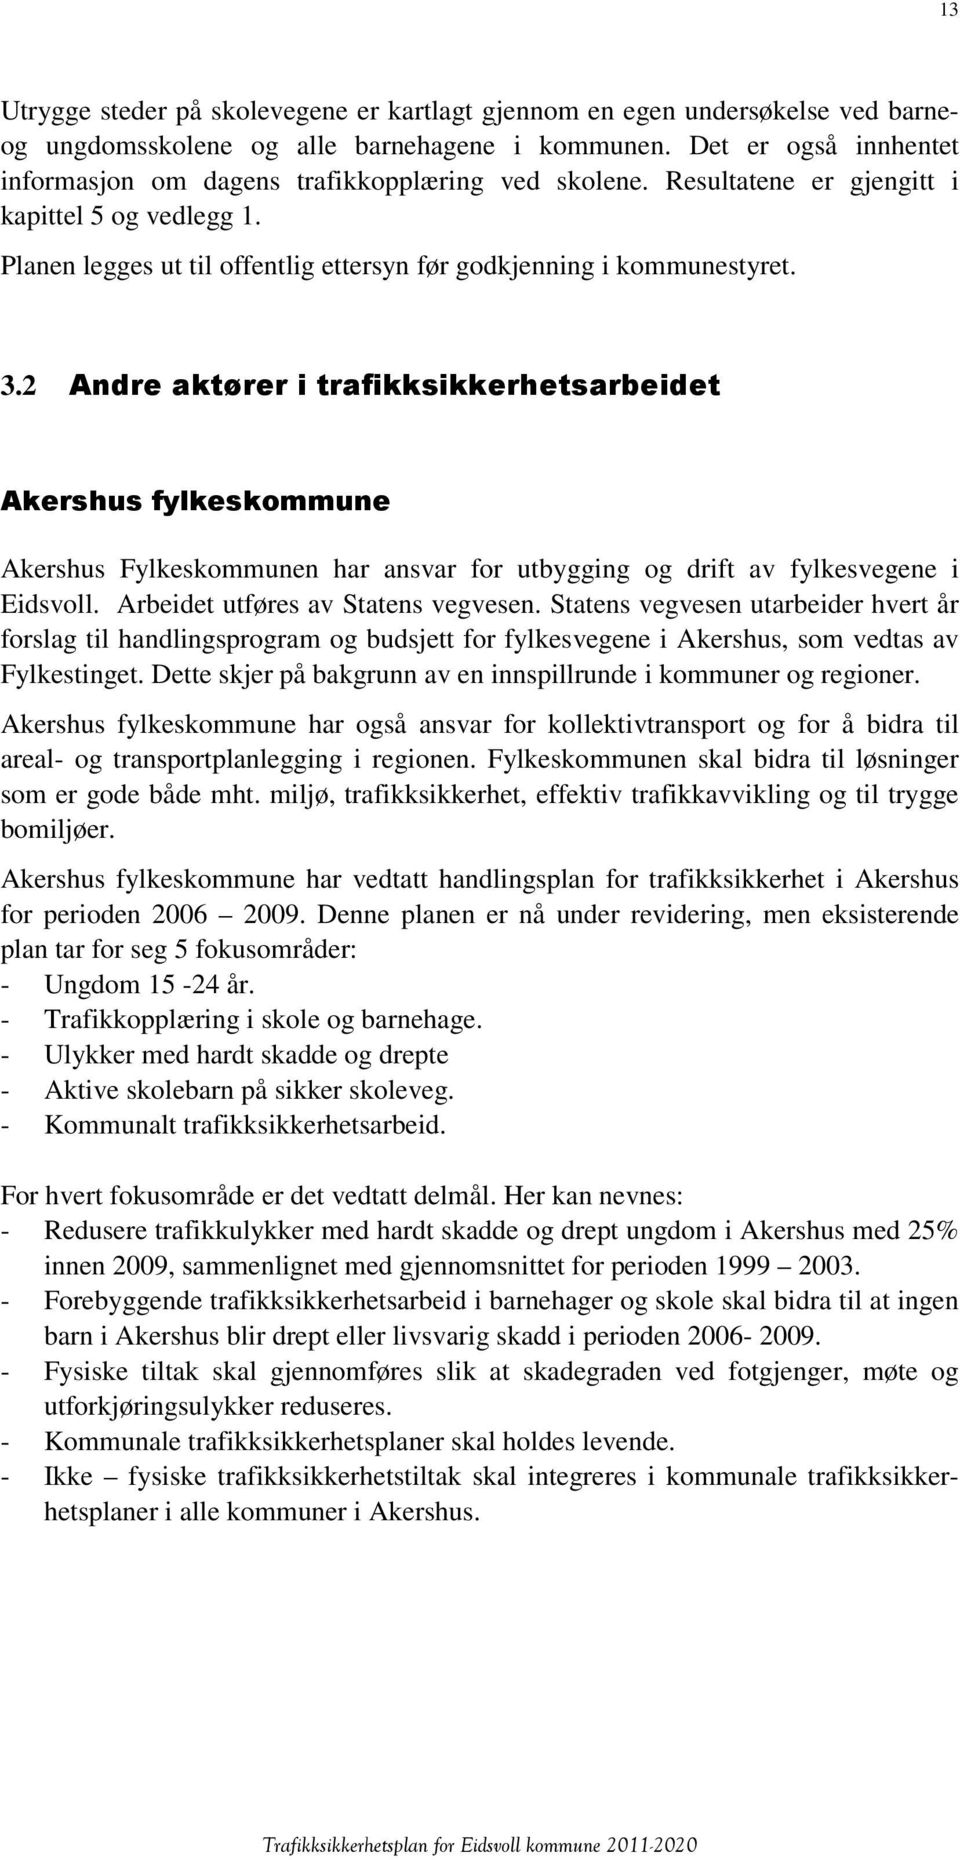 2 Andre aktører i trafikksikkerhetsarbeidet Akershus fylkeskommune Akershus Fylkeskommunen har ansvar for utbygging og drift av fylkesvegene i Eidsvoll. Arbeidet utføres av Statens vegvesen.